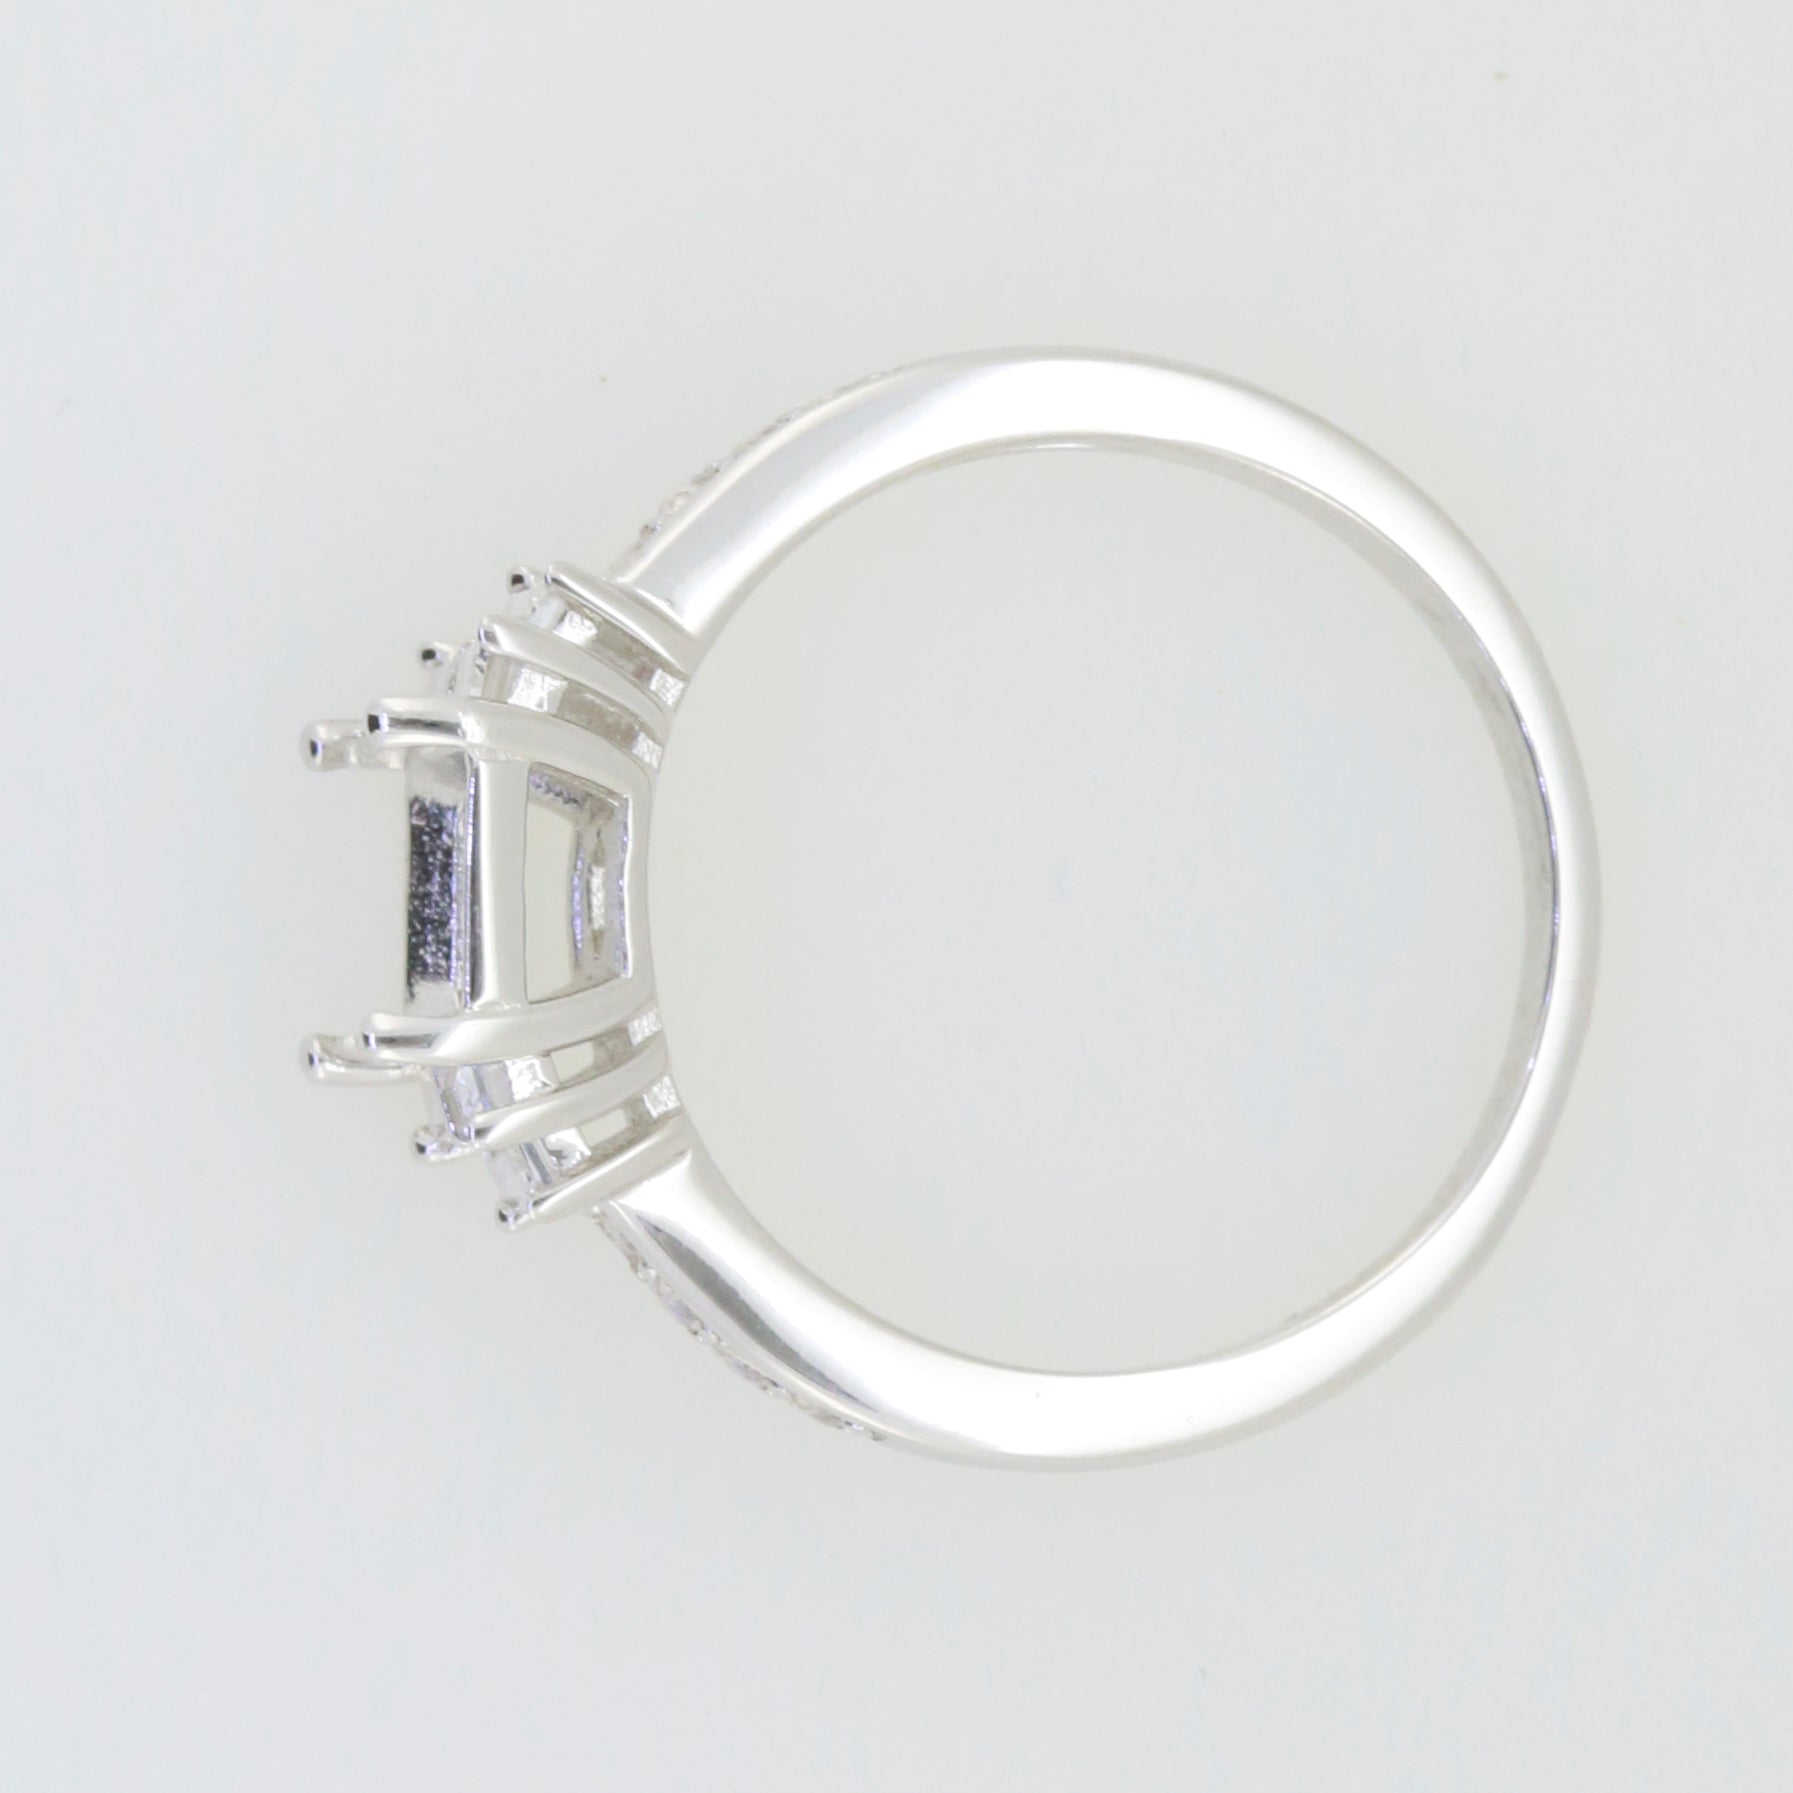 Halbmontierter Ring aus Sterlingsilber mit Smaragd-Okt., 8 x 6 mm, Beutel mit 3 x 1,5 mm weißem Topas 